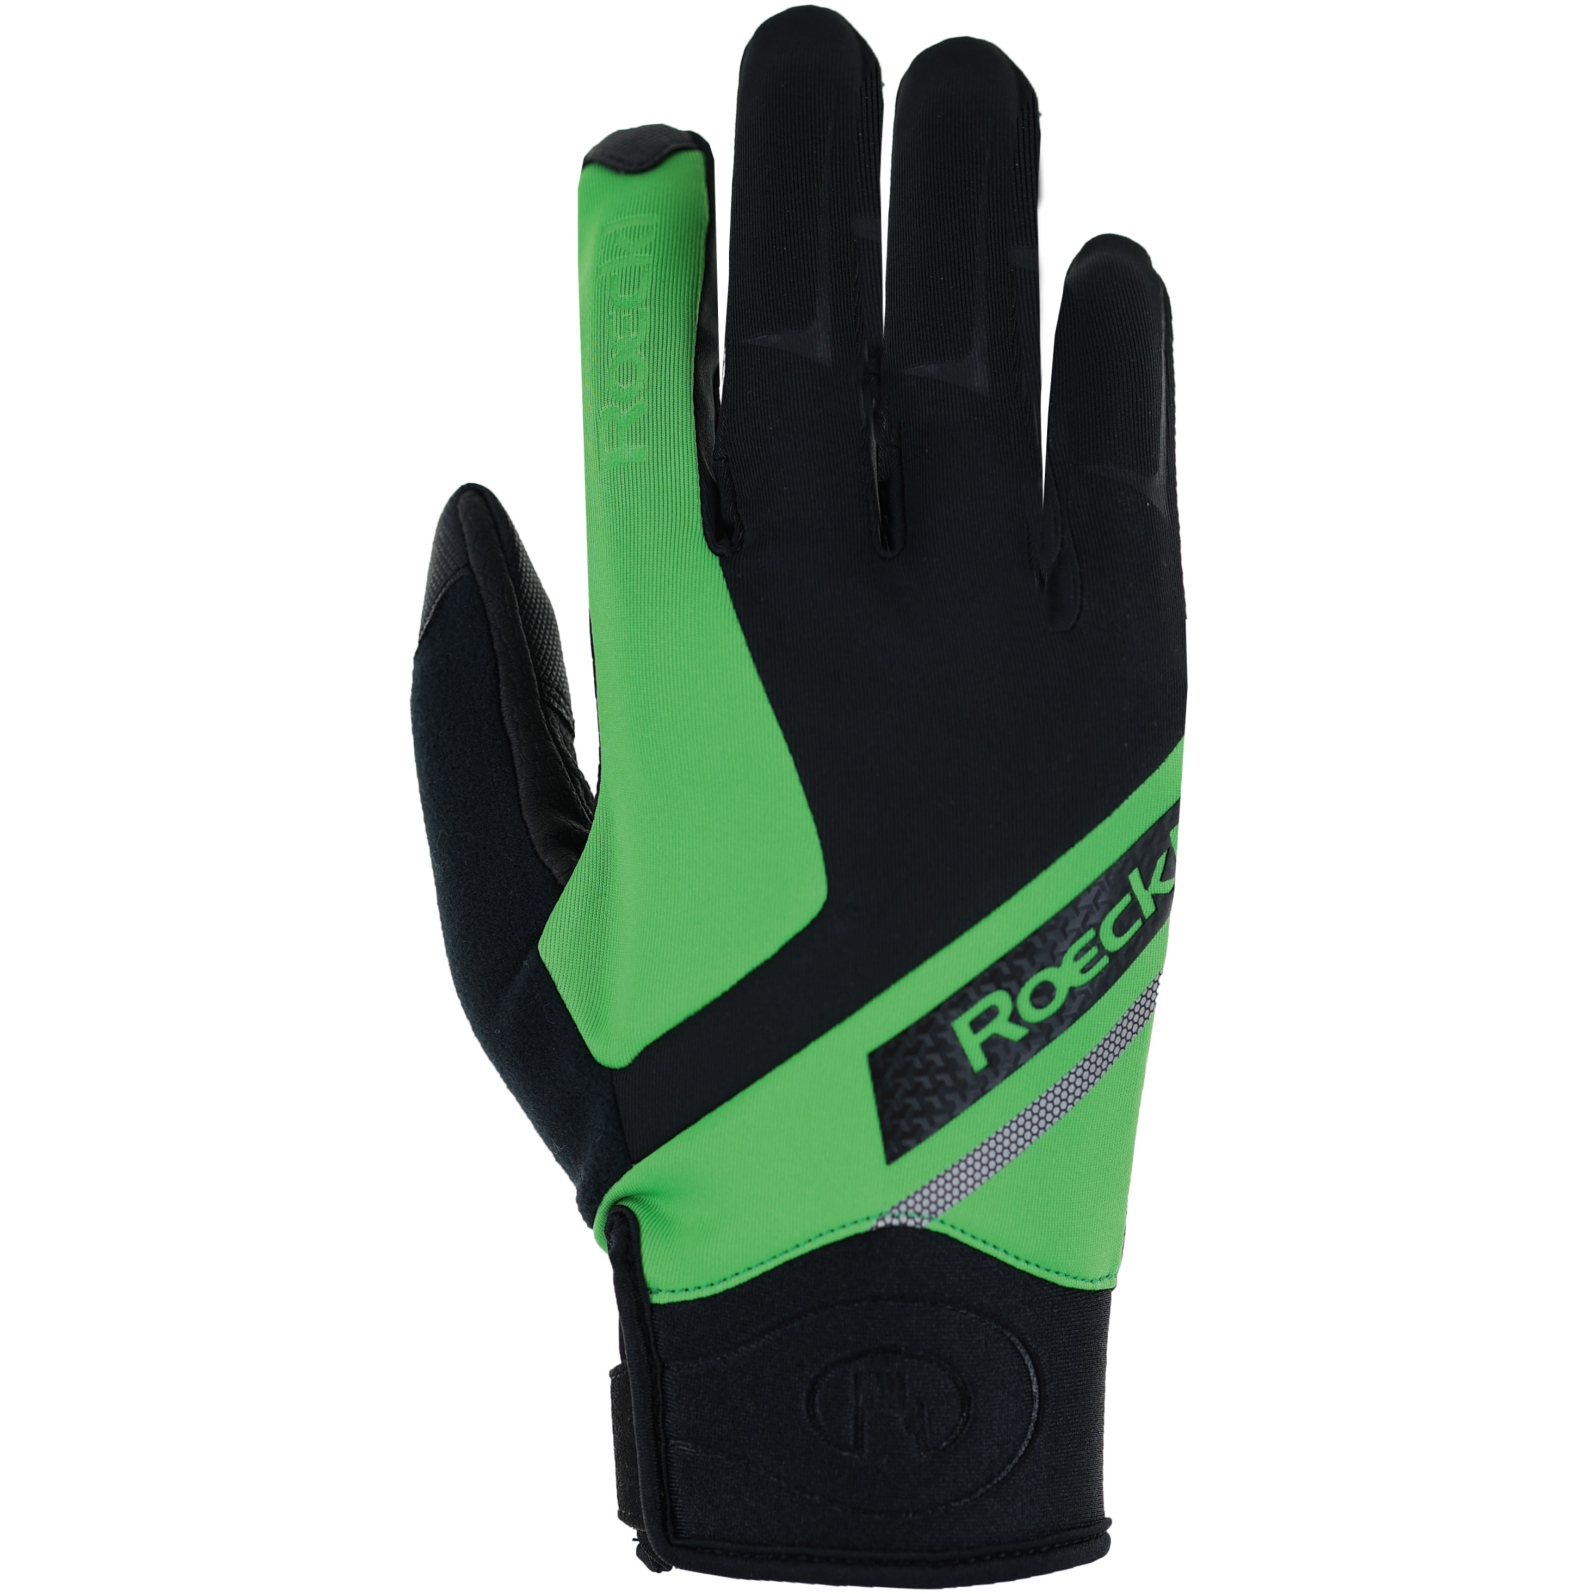 Productfoto van Roeckl Sports Lidhult Winterhandschoenen - black/classic green 9020